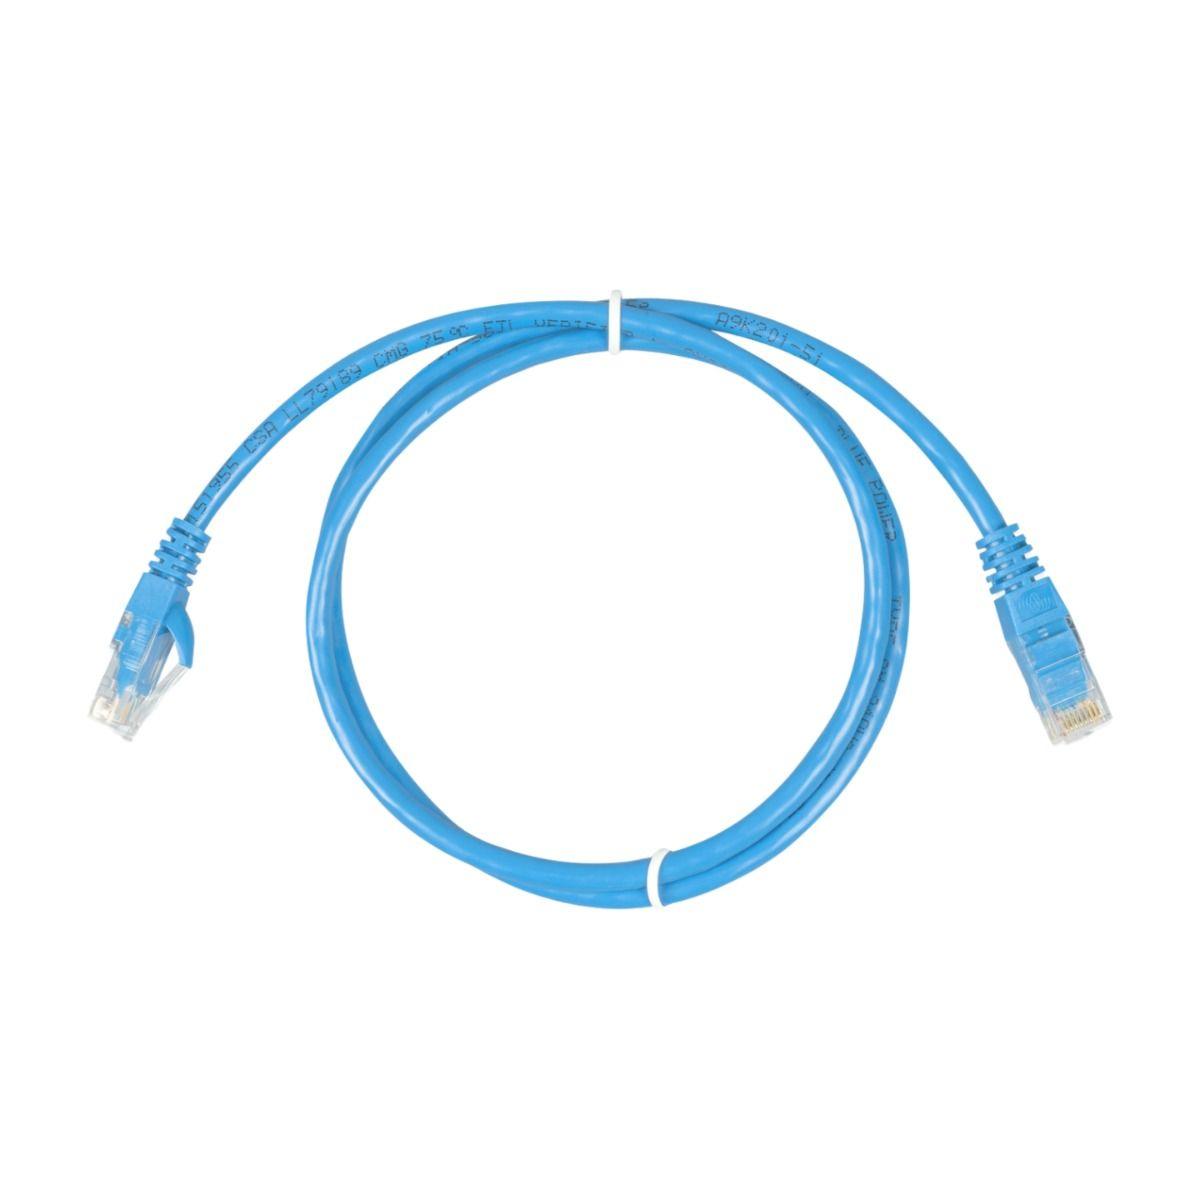 RJ45 UTP Cable 0,9 m - ASS030064920 - VoltaconSolar